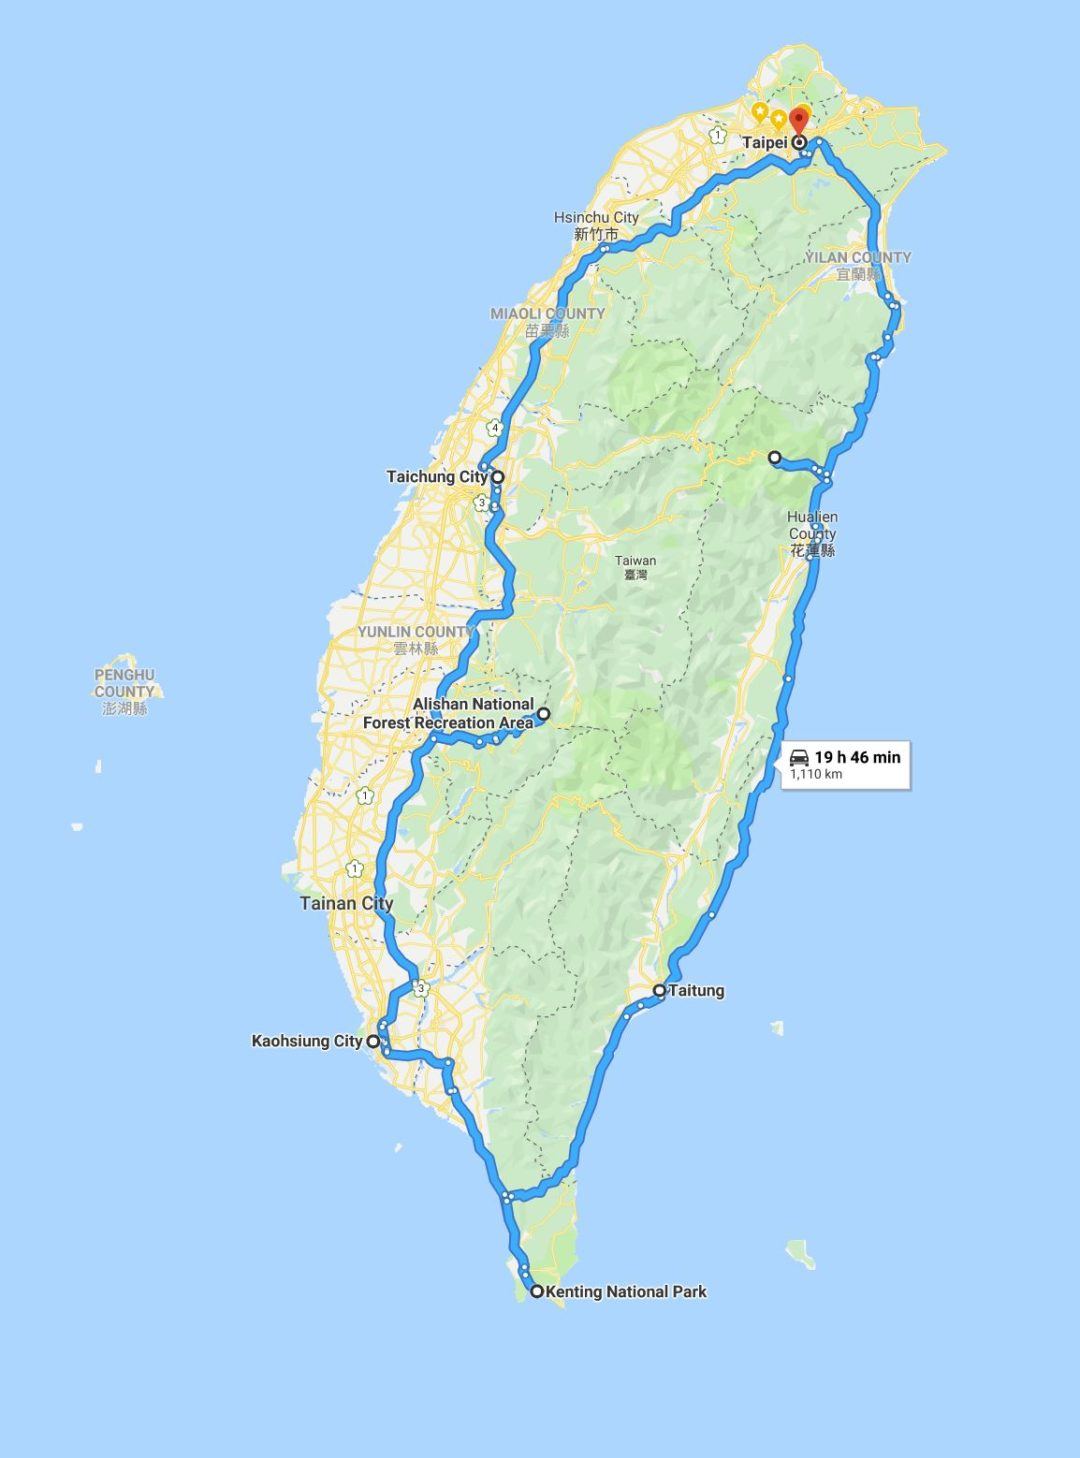 taiwan travel guide reddit